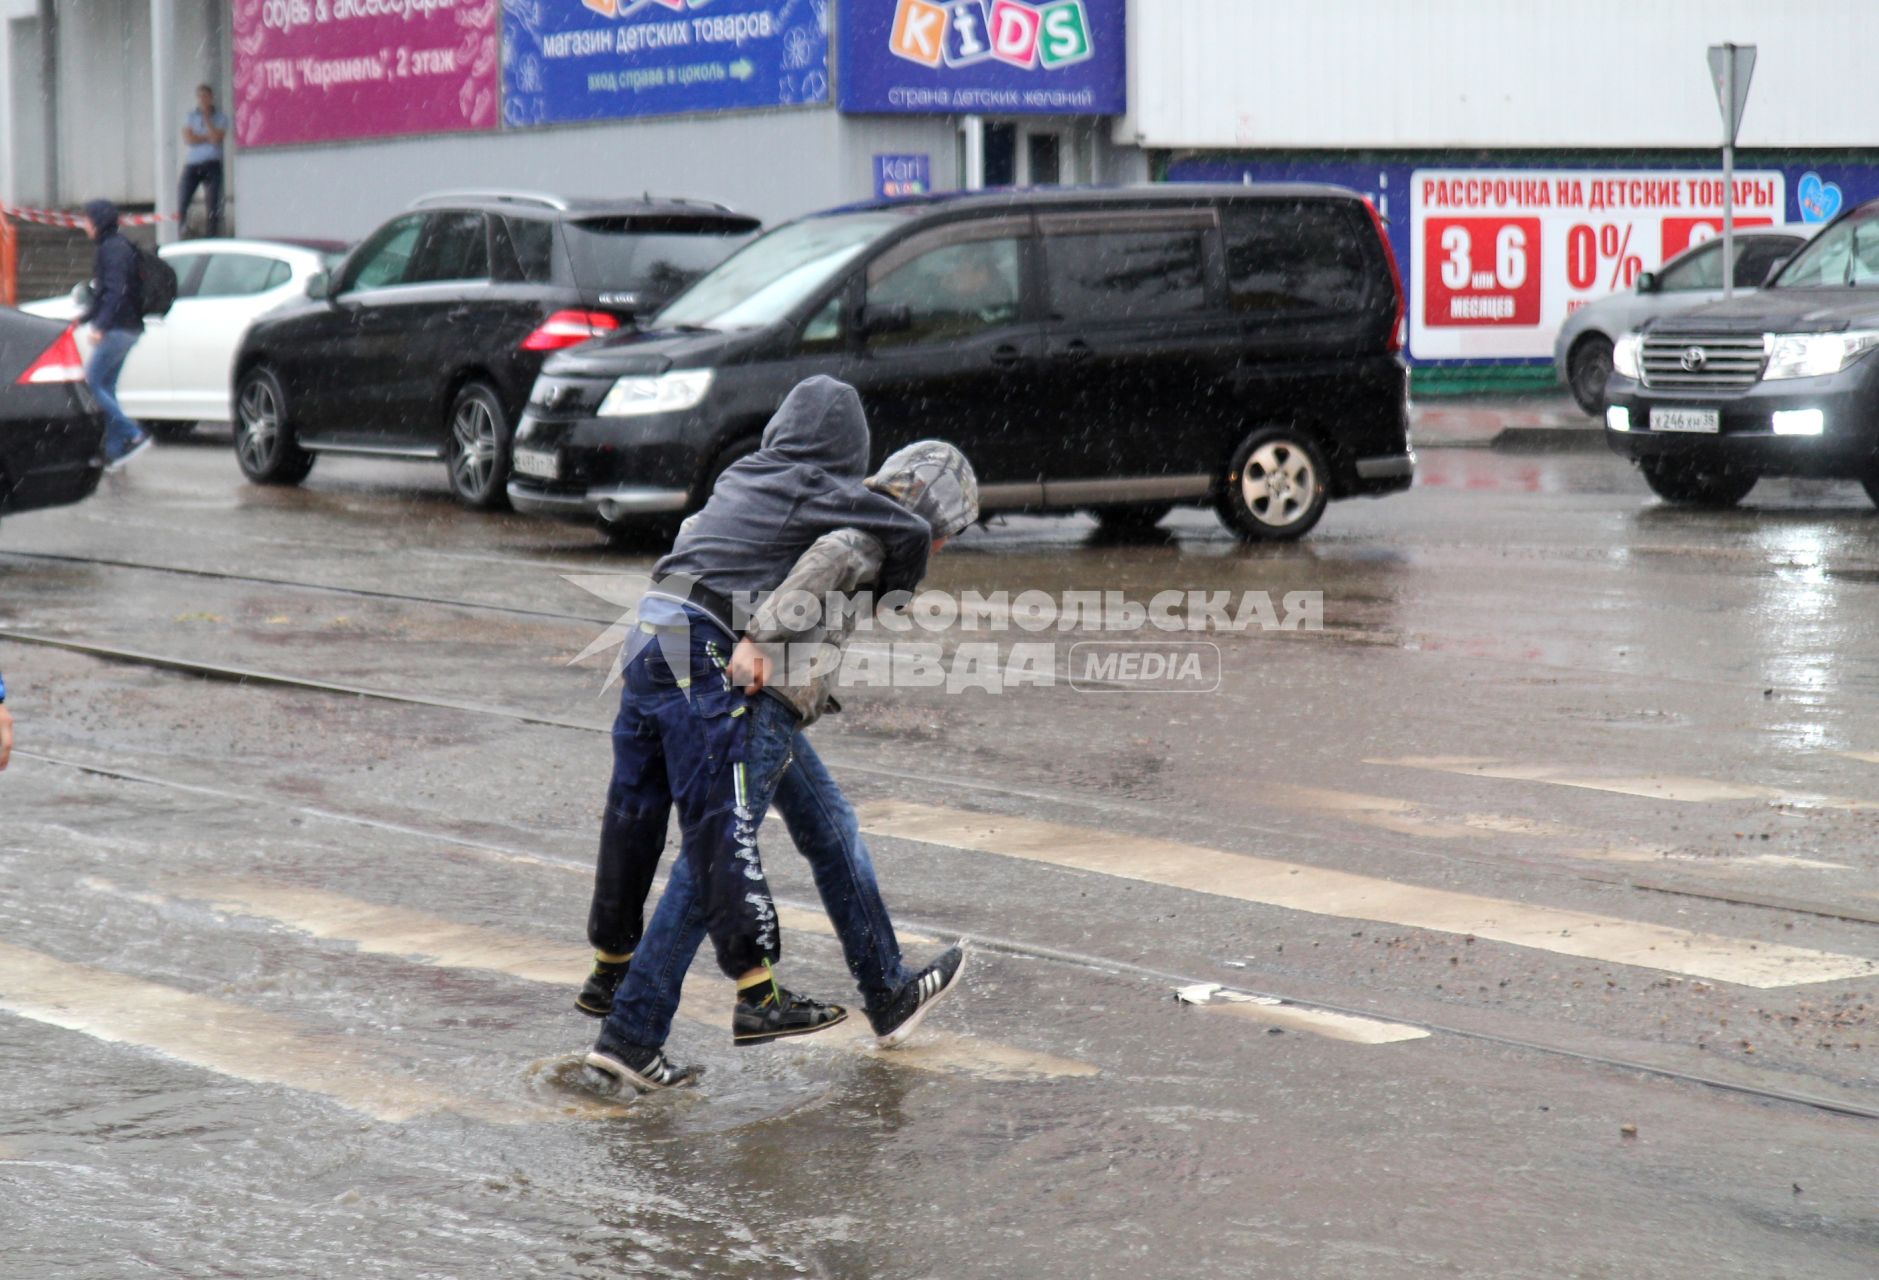 Иркутск. Дети идут по пешеходному переходу во время дождя.